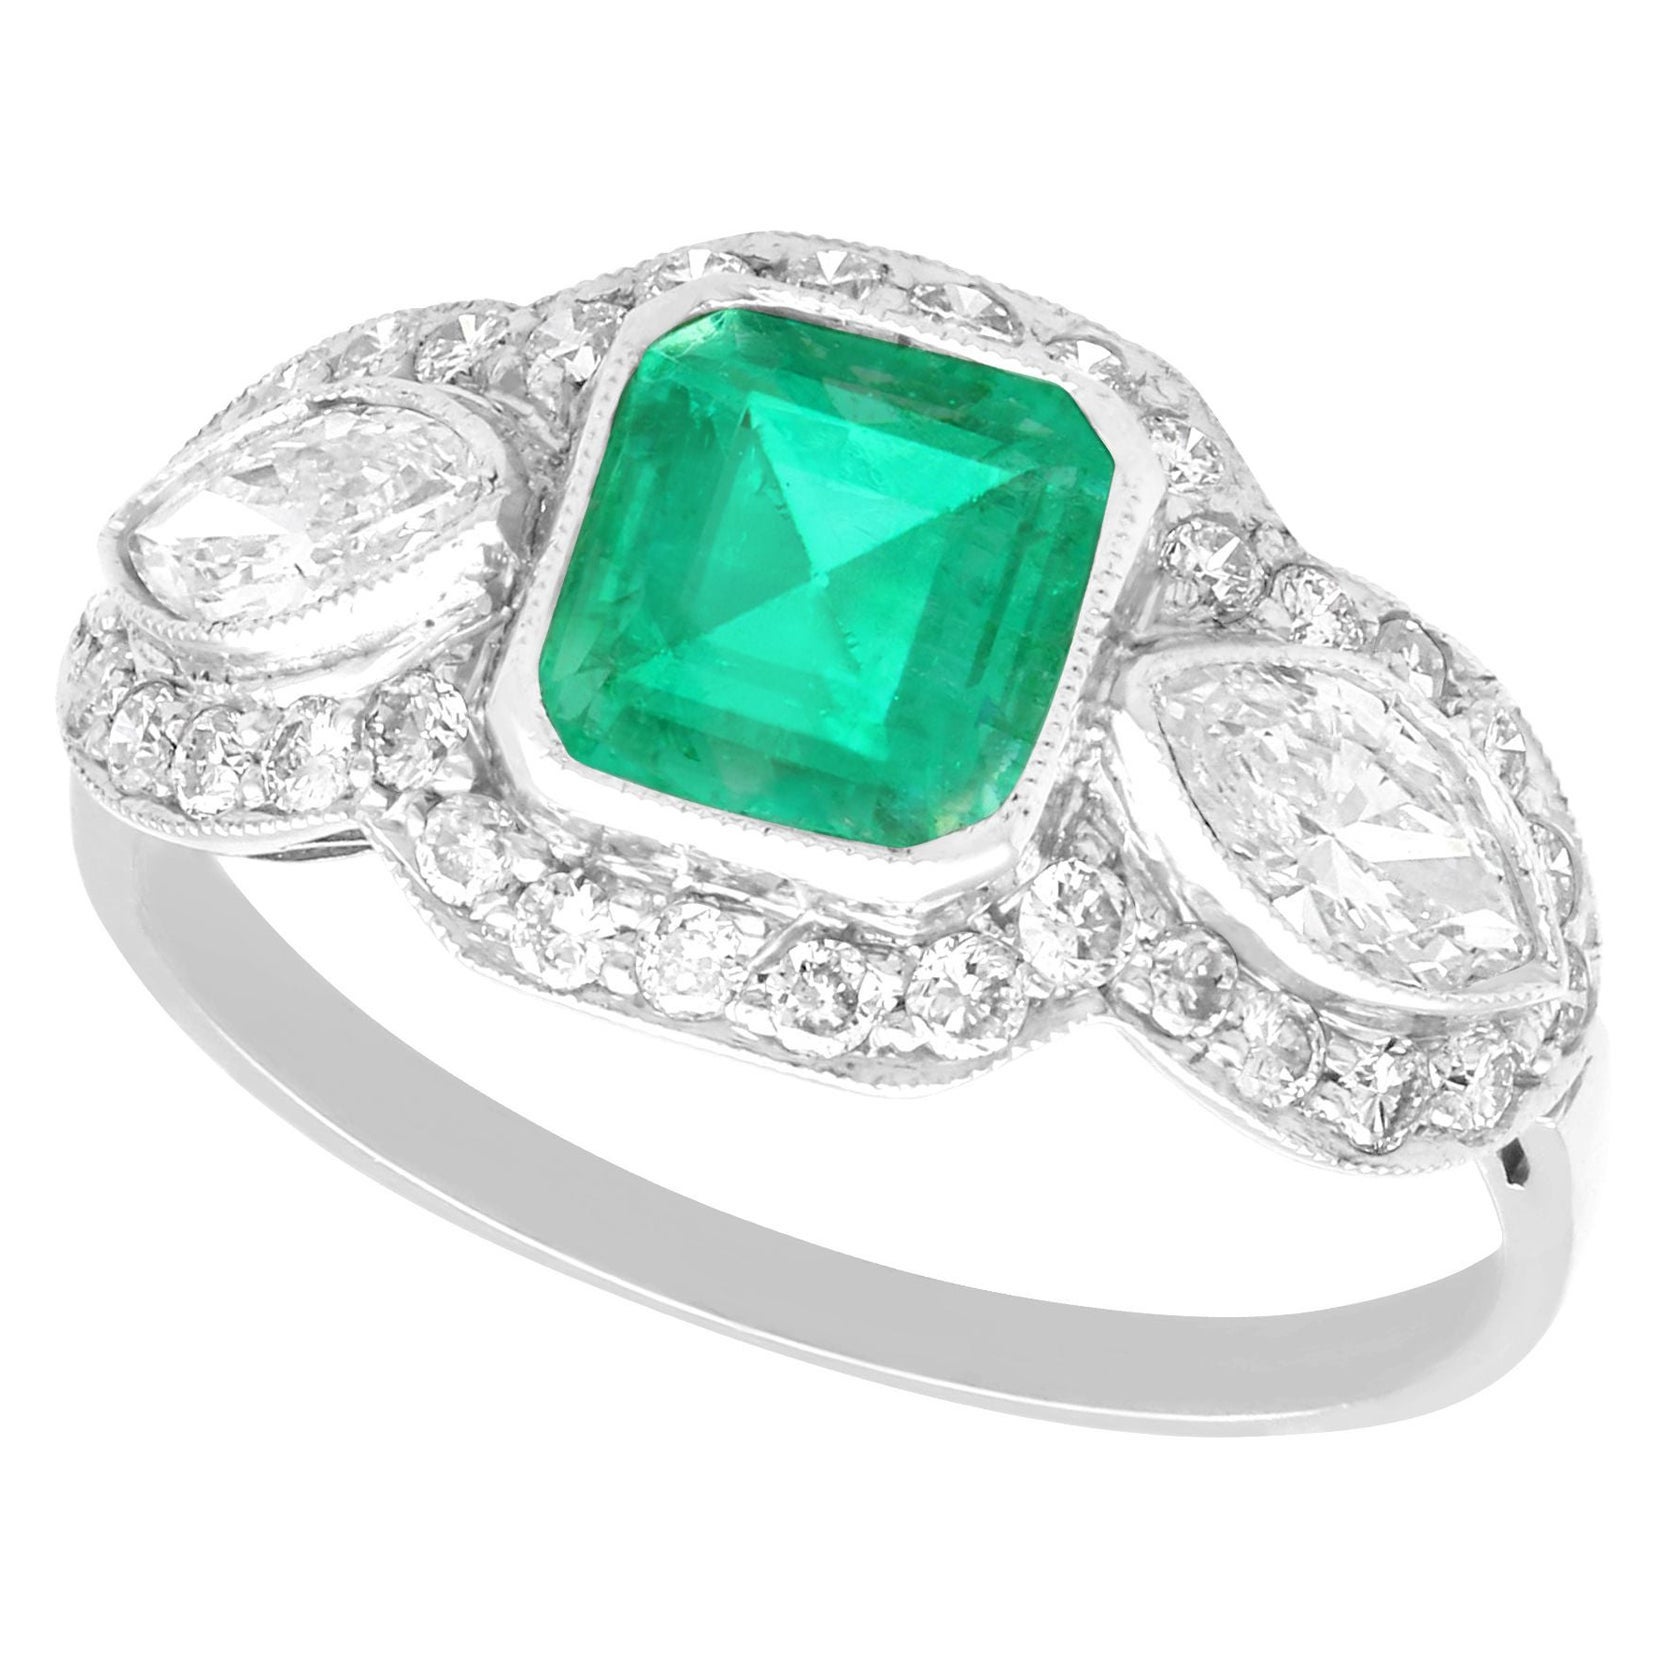 Antique 1.45 Carat Emerald and 1.43 Carat Diamond Platinum Engagement Ring